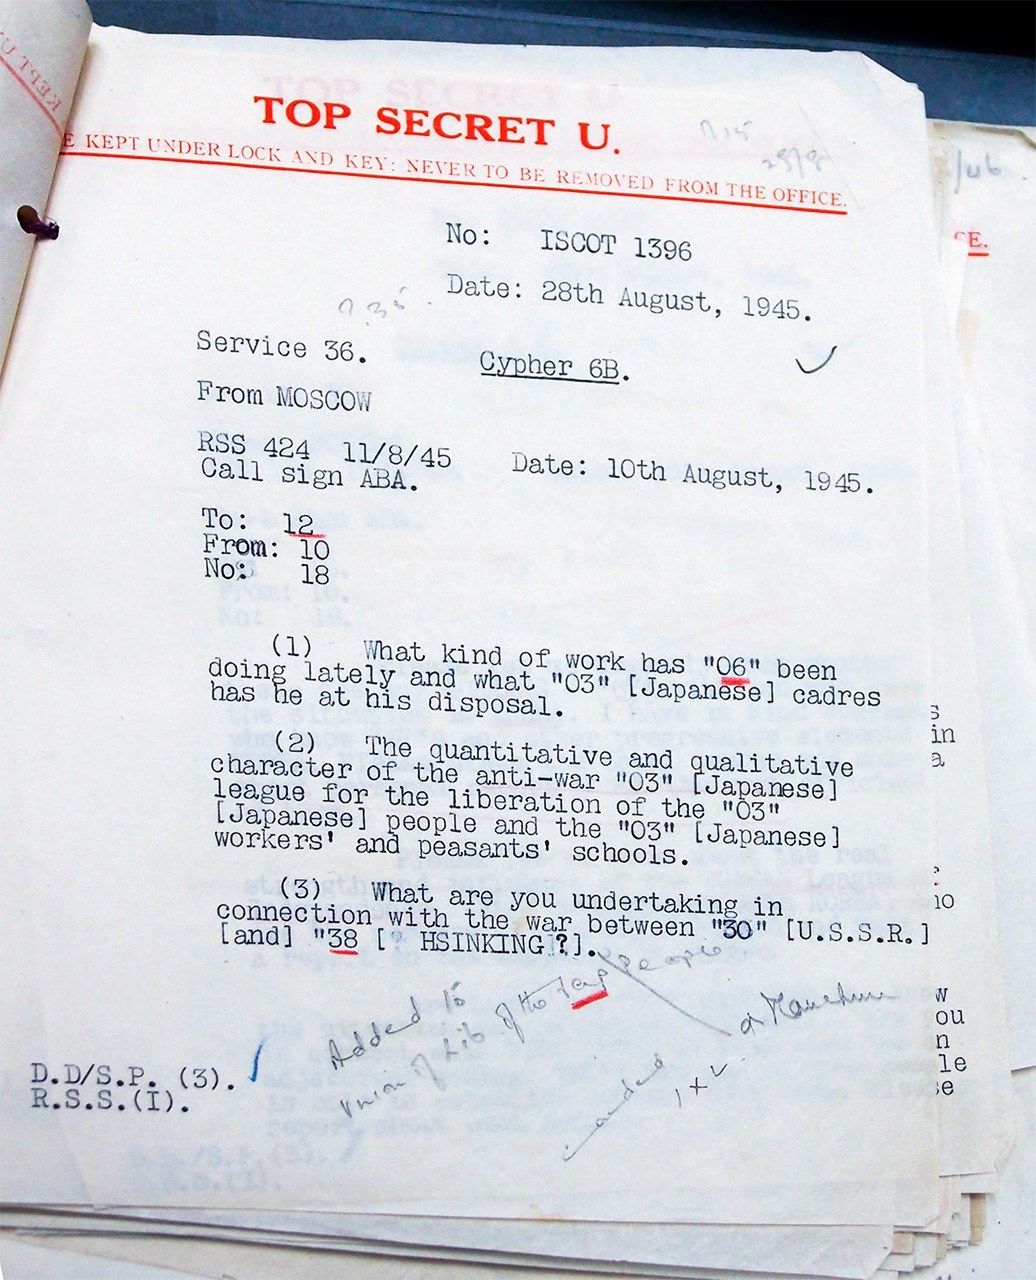 1945年8月10日発モスクワから中国共産党に宛てた傍受暗号電報。　延安の「日本人民解放同盟」などの状況に関する問い合わせ
出典：The National Archives, Kew. HW/17/42